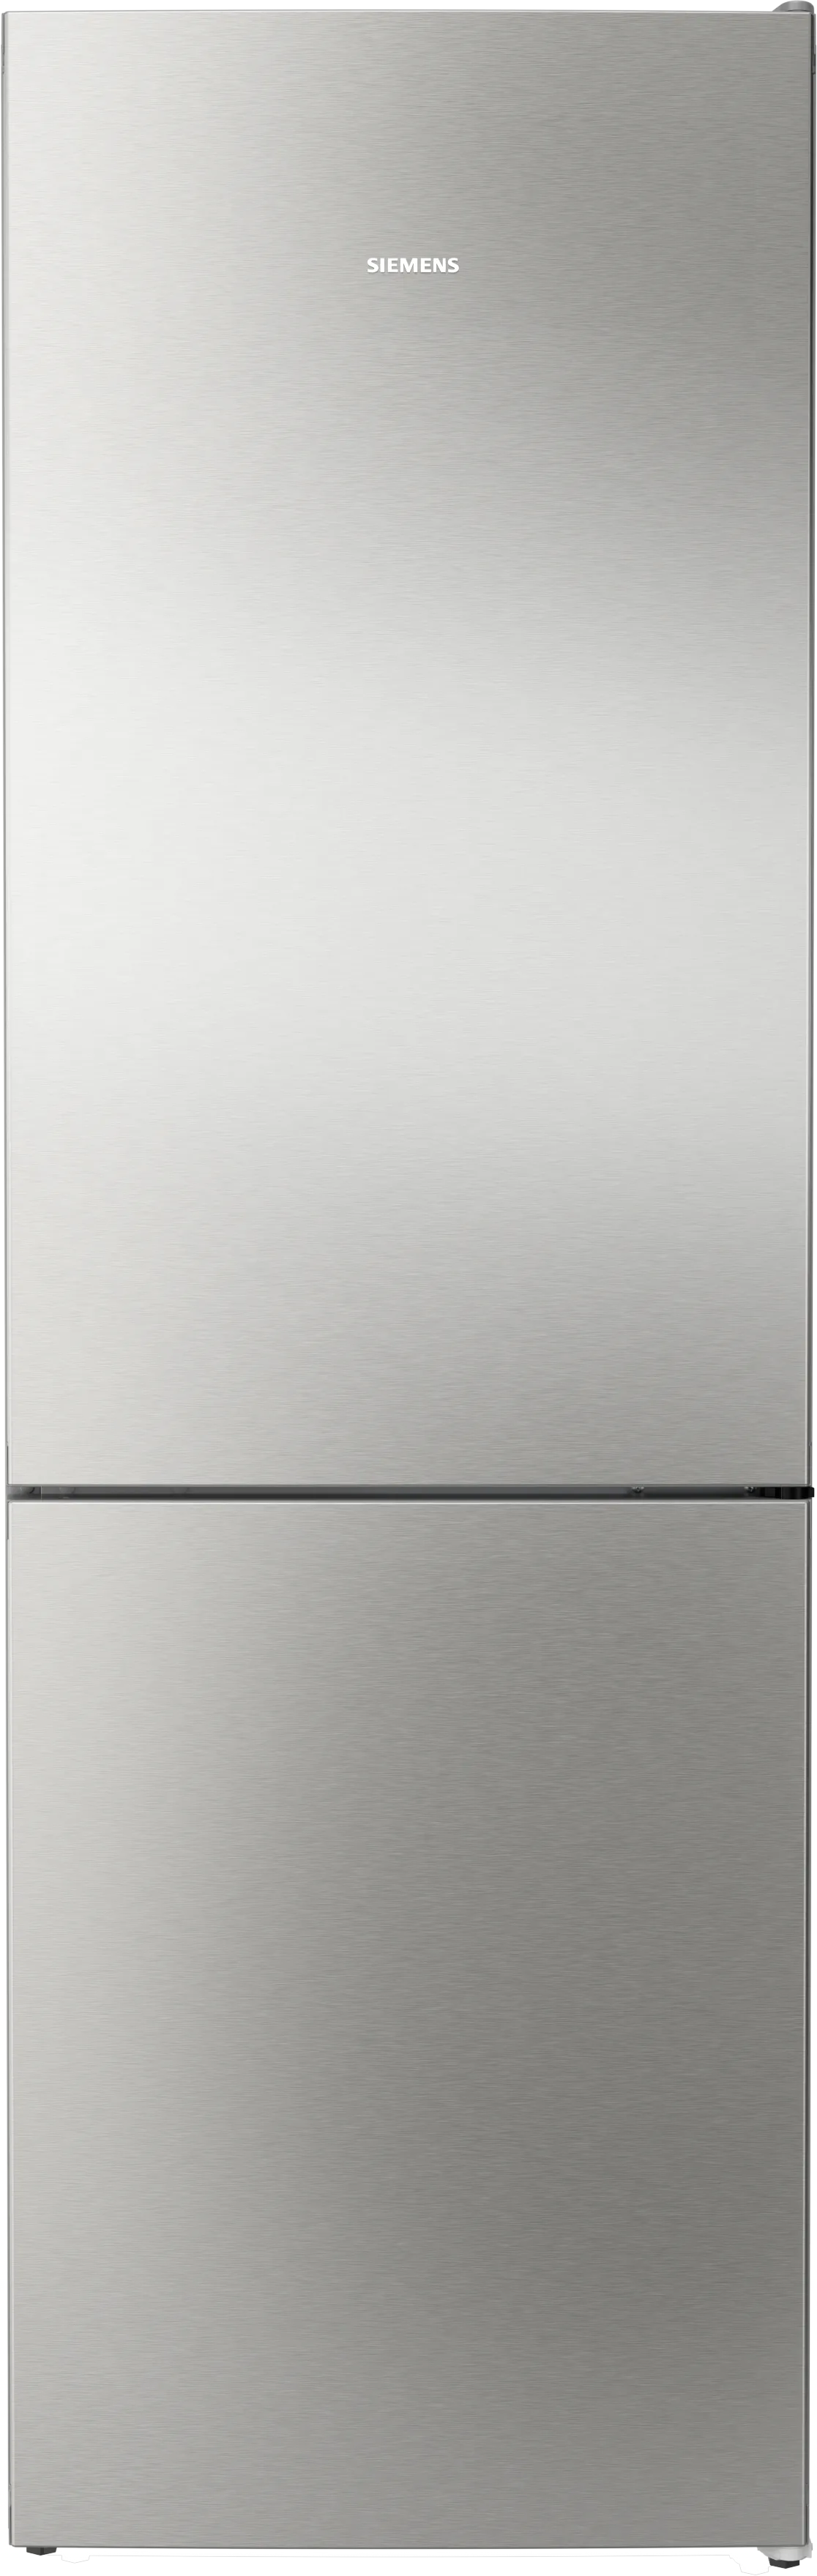 iQ300 Réfrigérateur-congélateur pose libre avec compartiment congélation en bas 186 x 60 cm Acier brossé anti-traces 